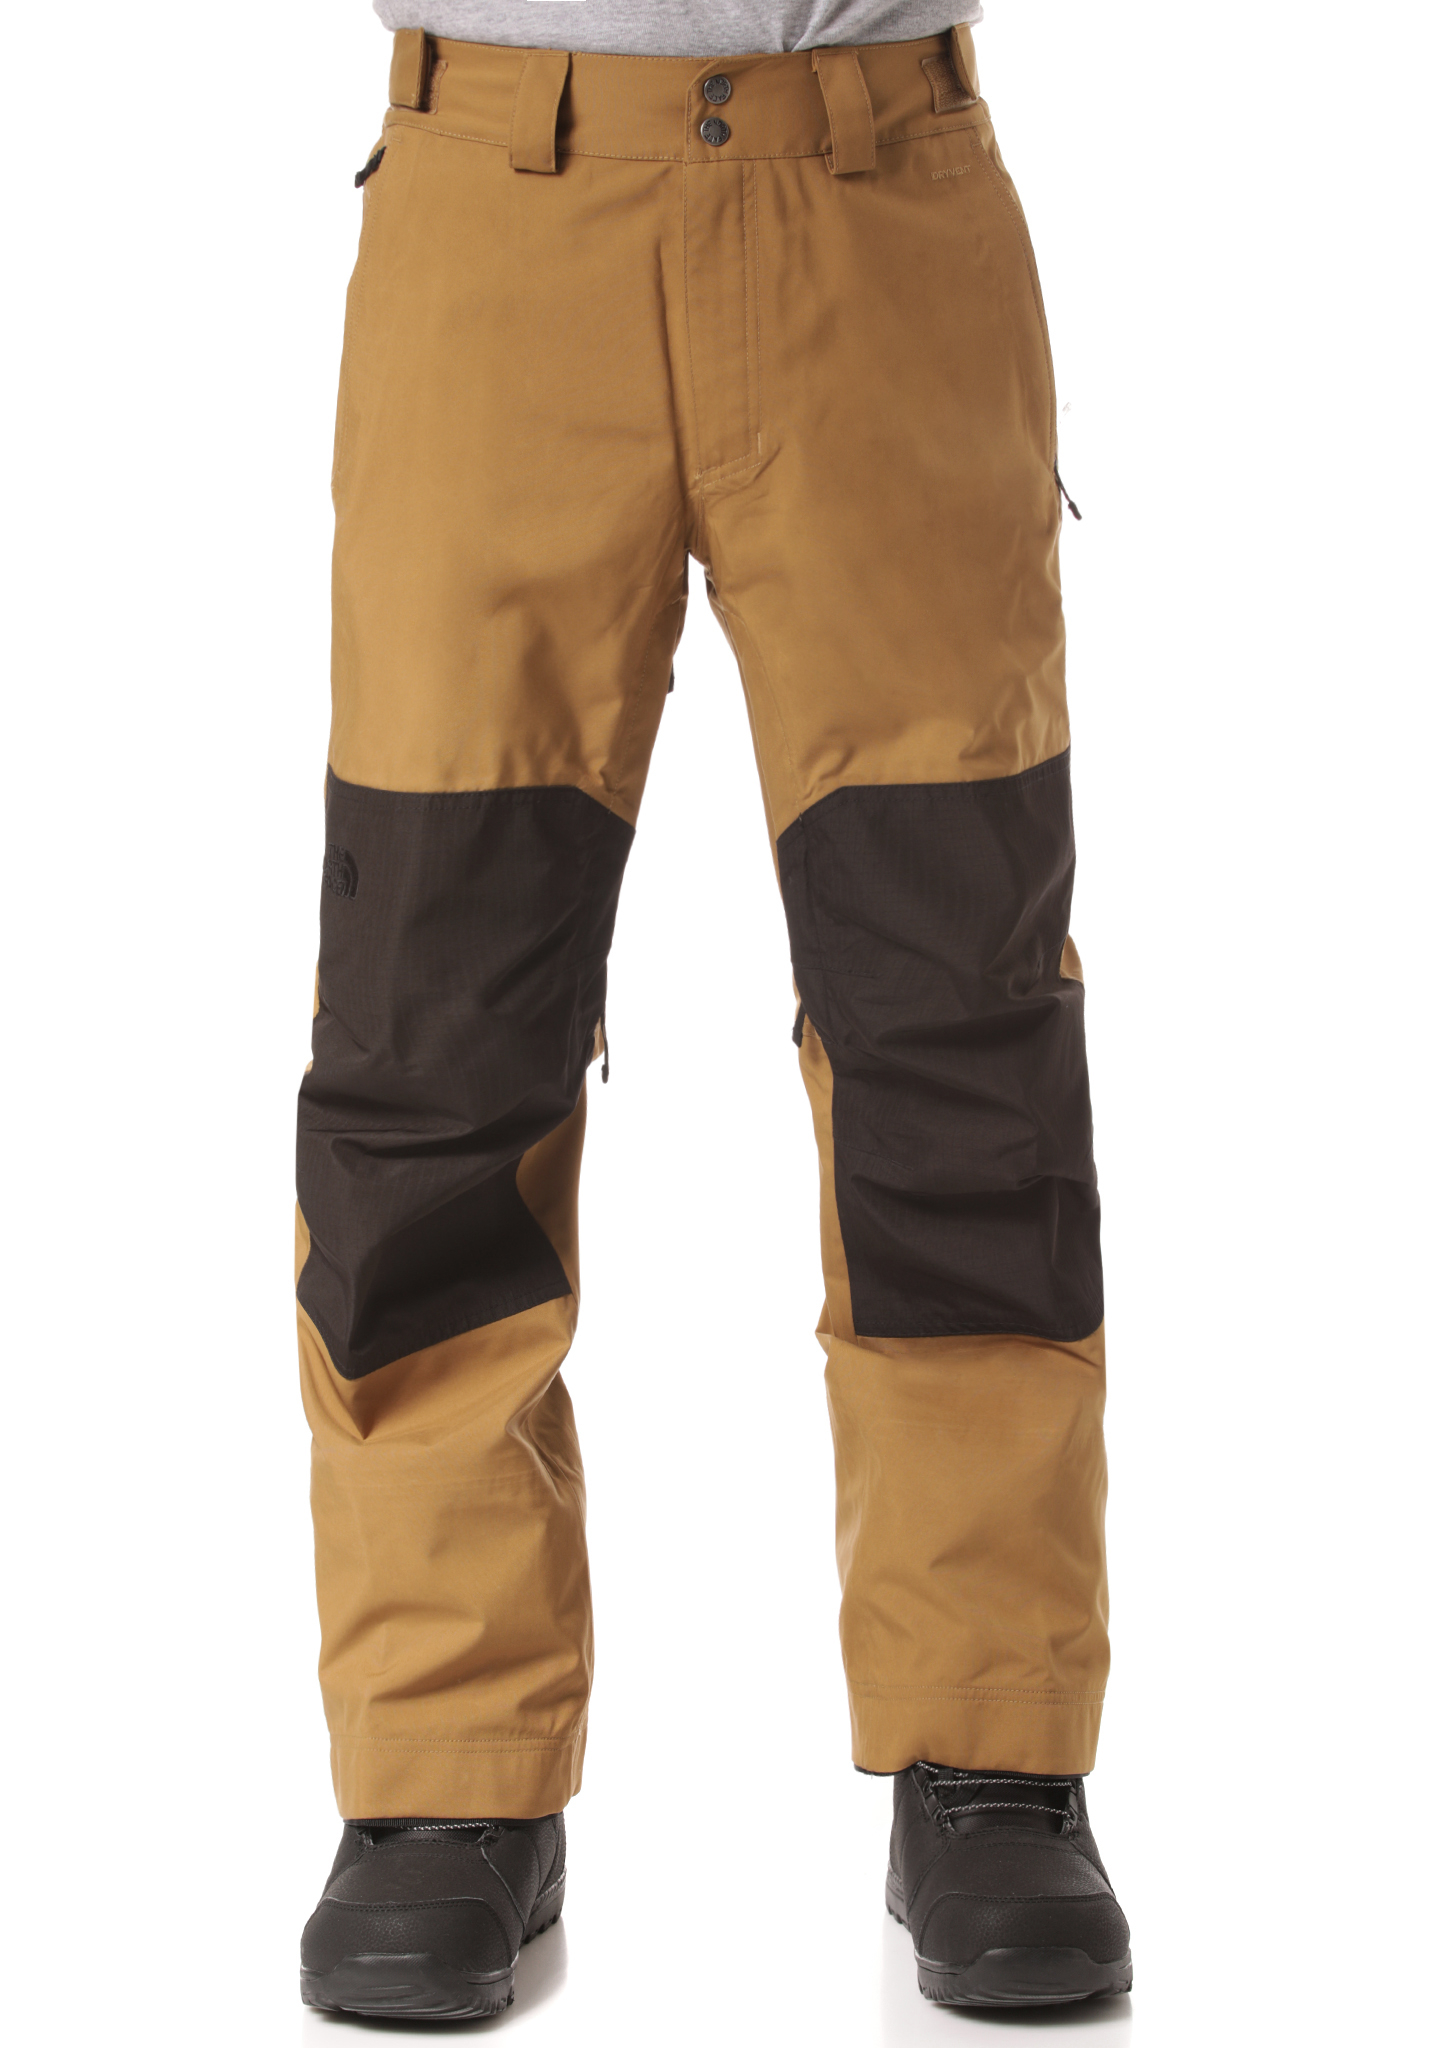 The North Face DRT Snowboardhosen britisch khaki/tnf schwarz L